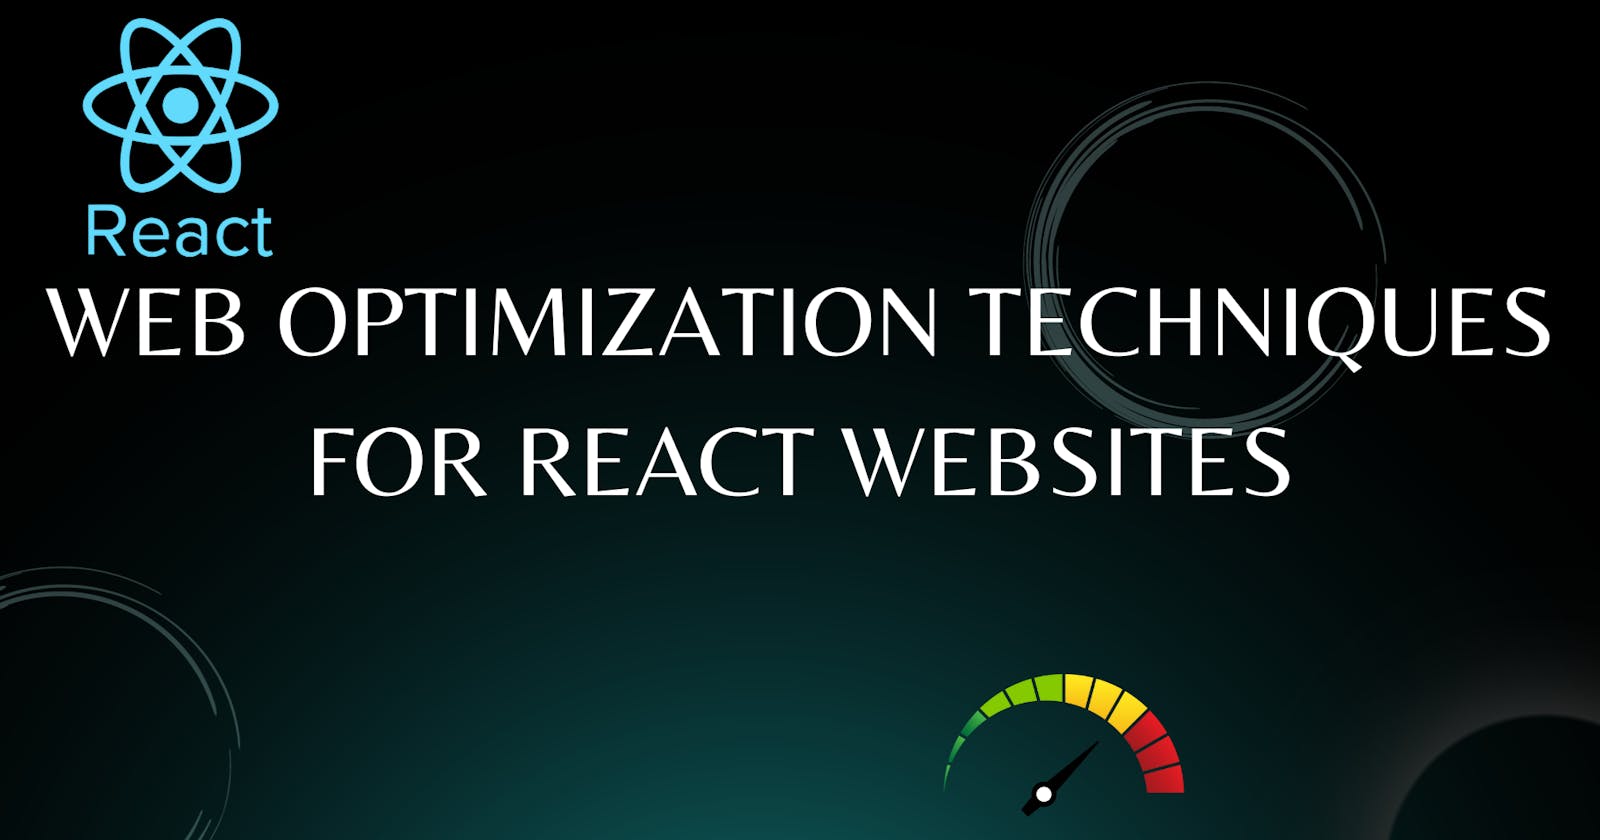 Web Optimization Techniques for React Websites